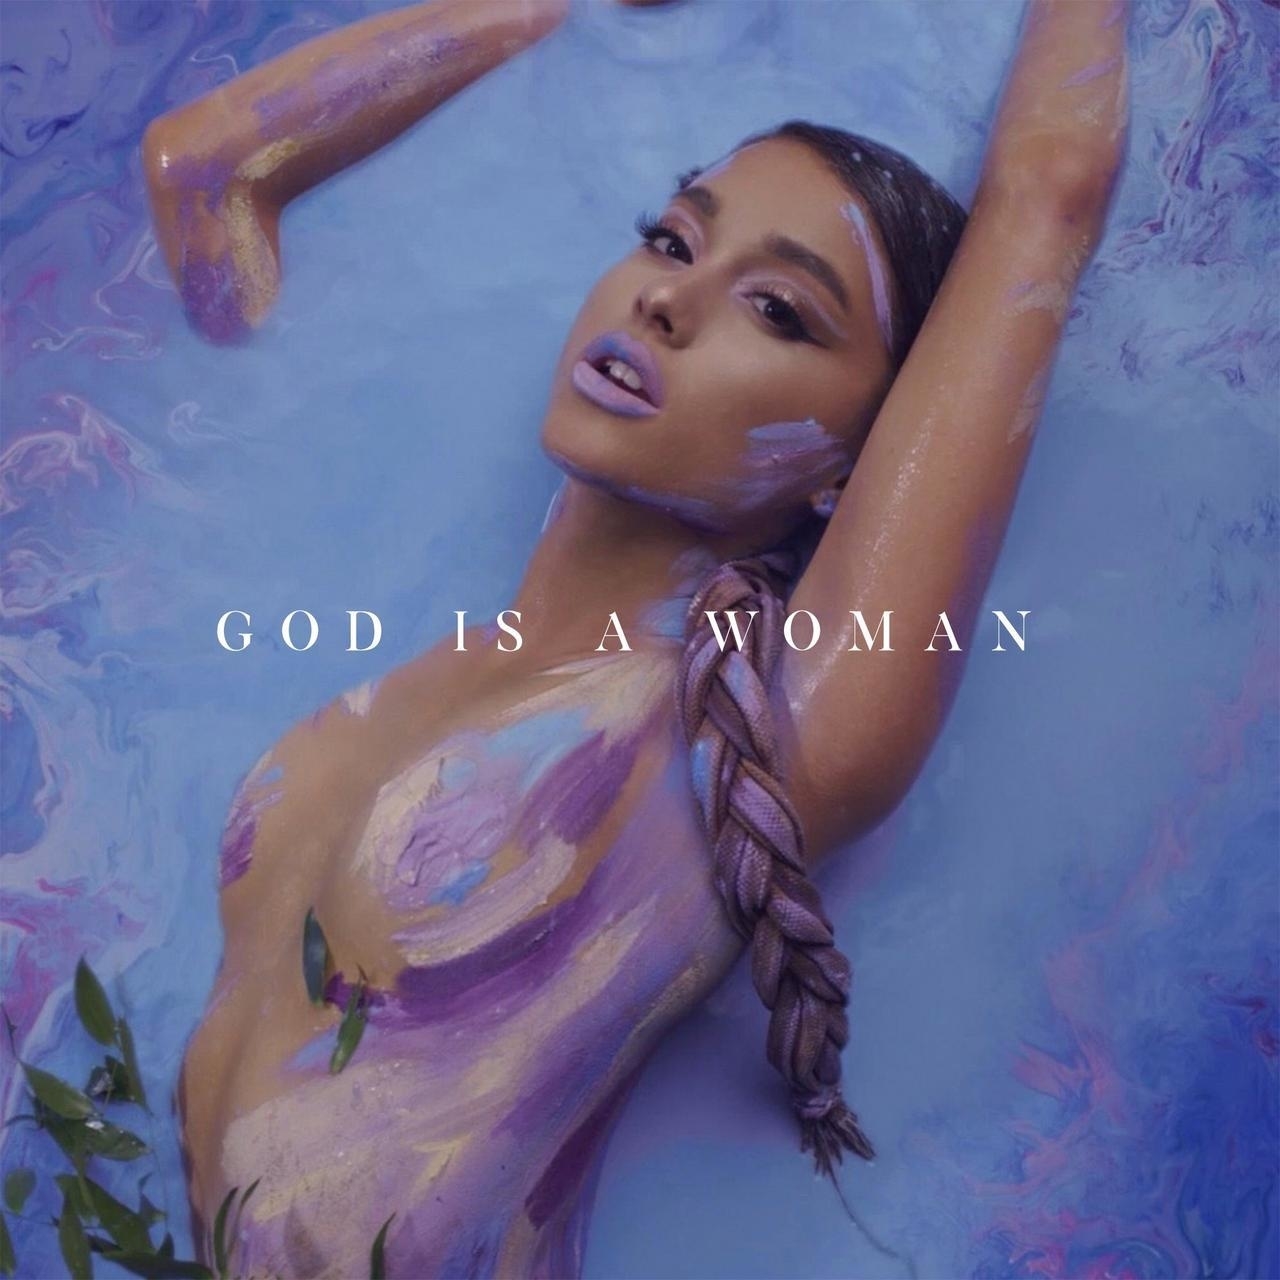 Resultado de imagem para god is a woman cover art